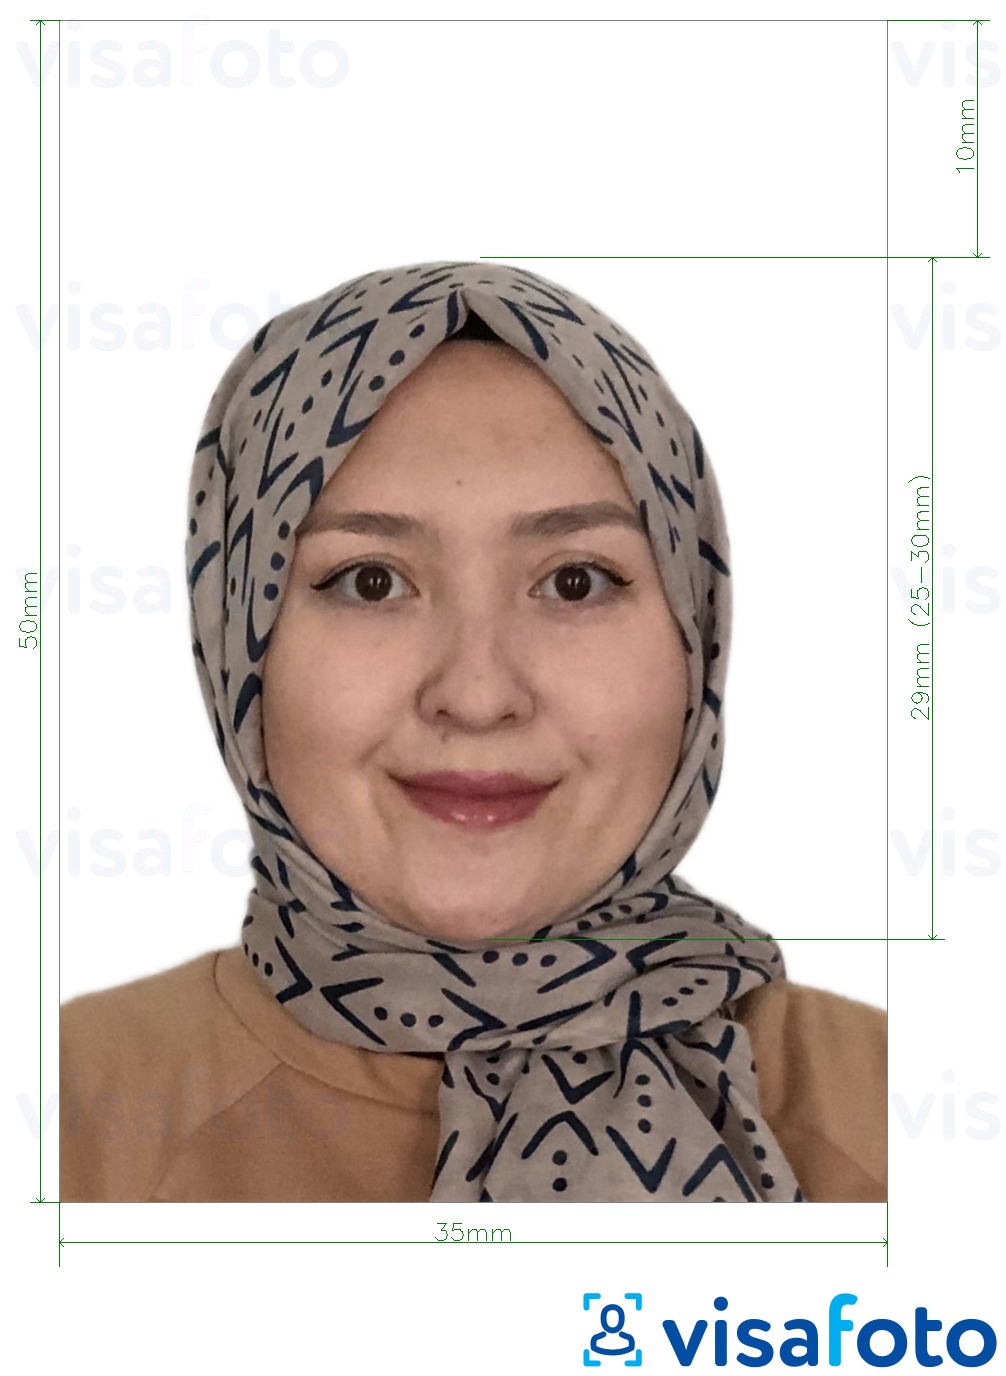 نمونه ی یک عکس برای پاسپورت مالزی پس زمینه سفید 35x50 میلیمتر با مشخصات دقیق